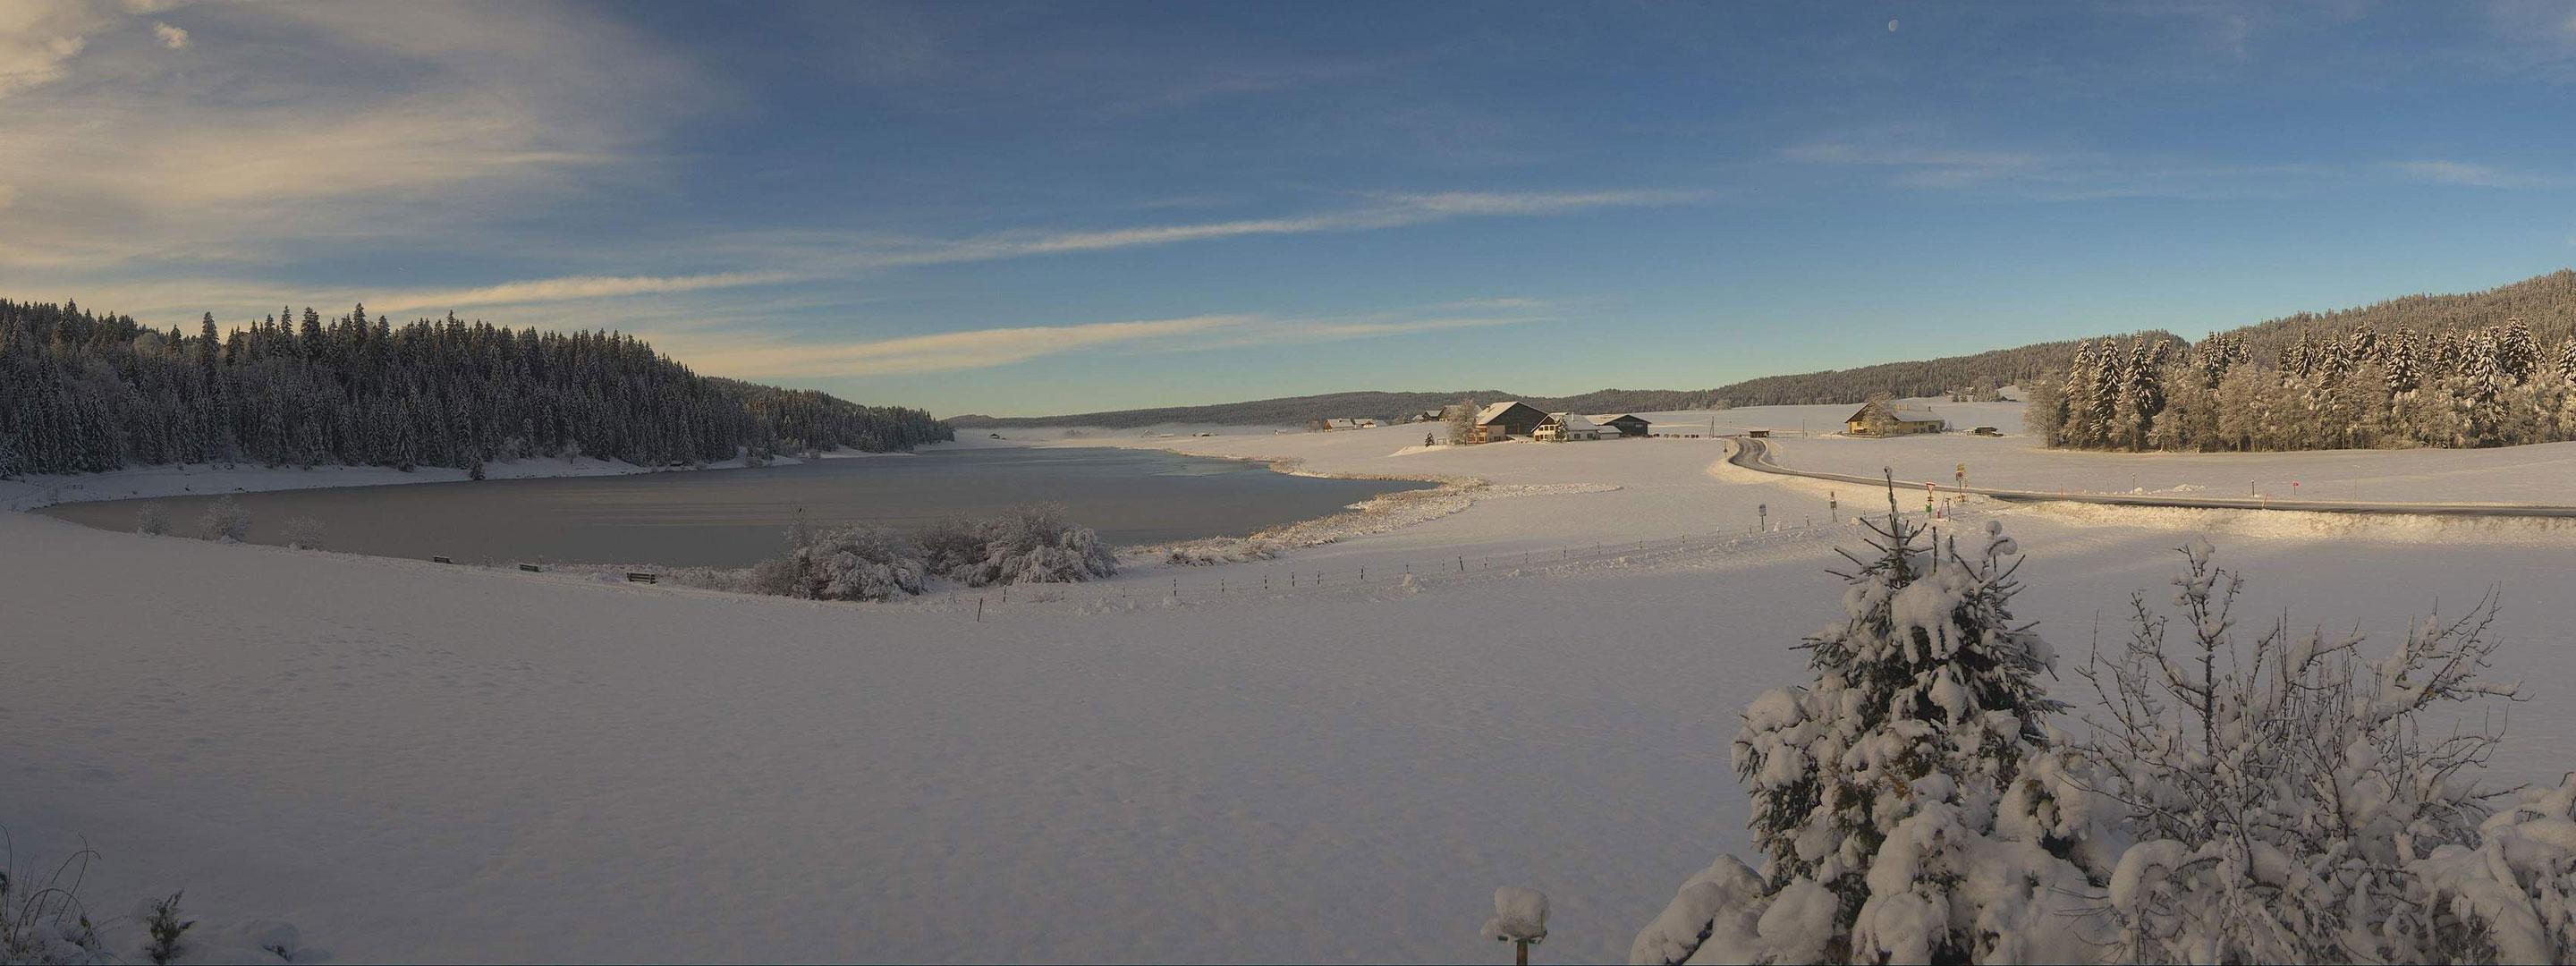 Webcambild Lac de Tailleres Dezember 2020